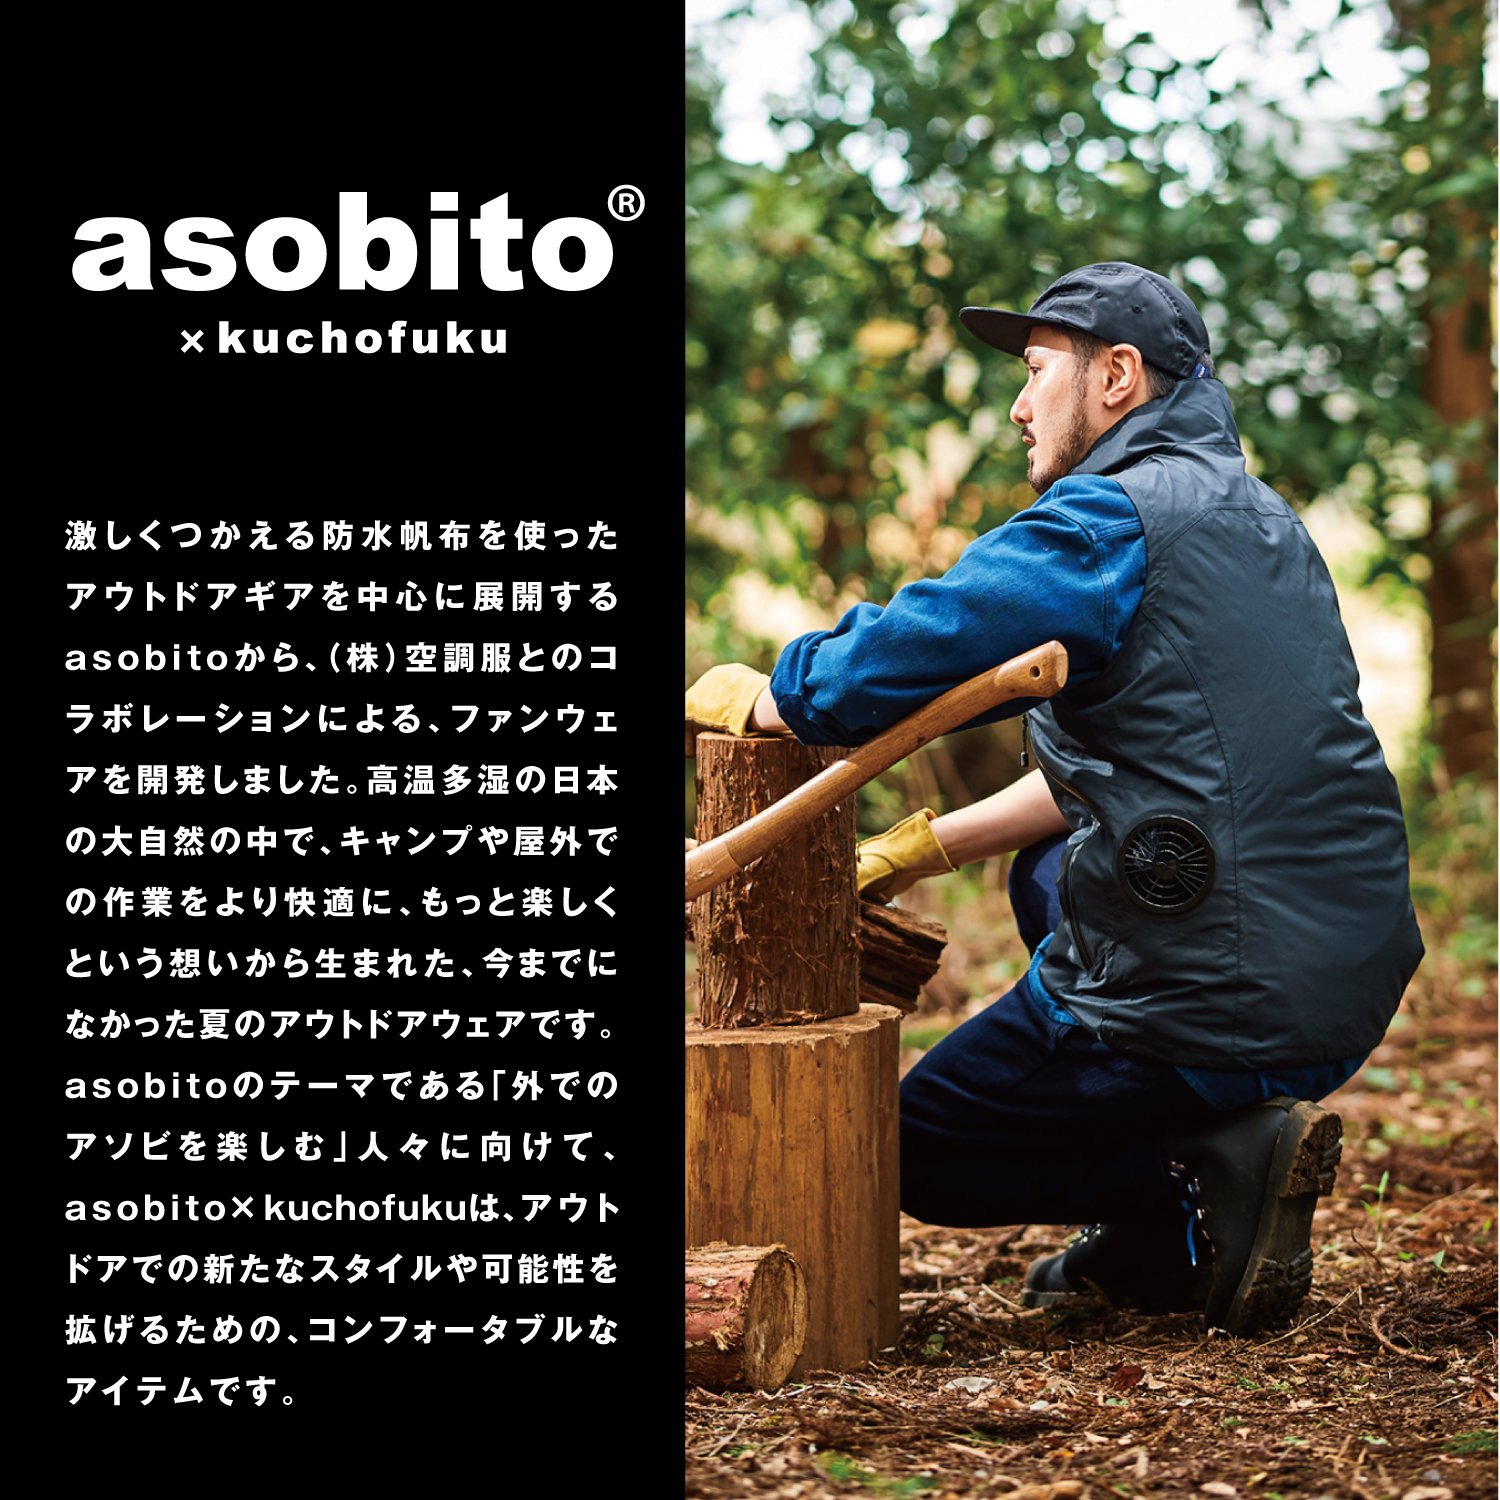 asobito_image